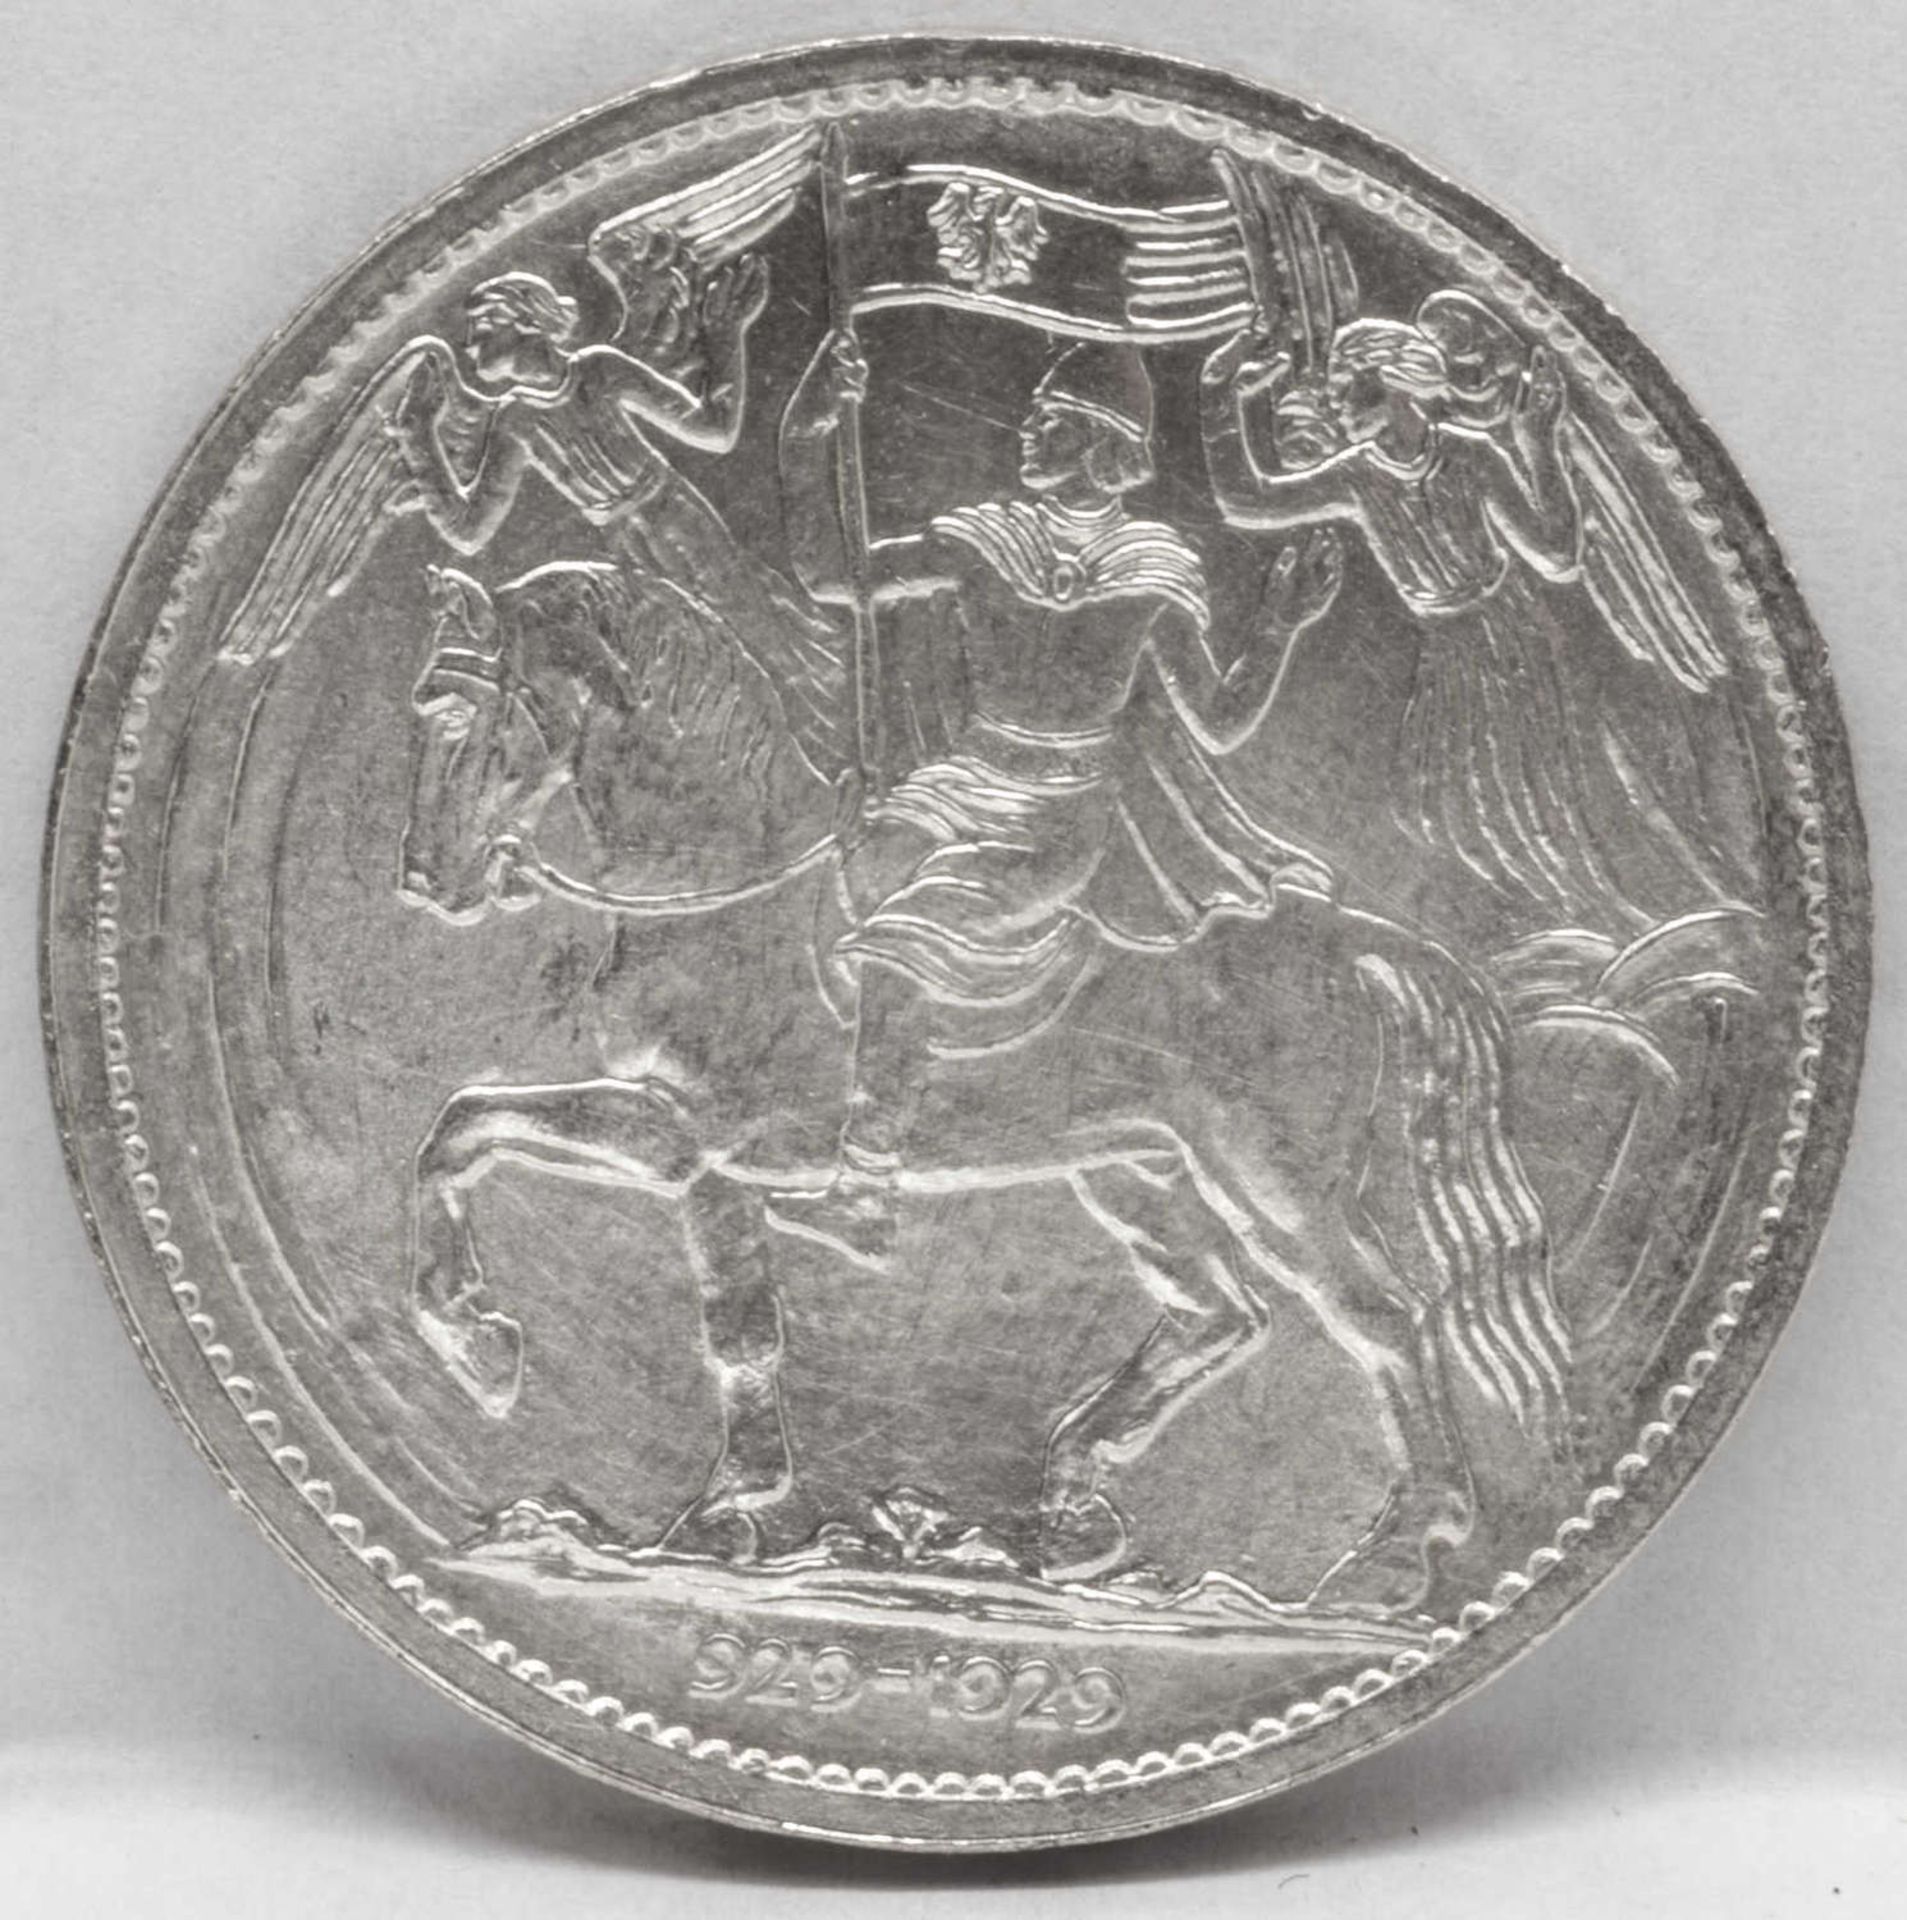 Tschechien 19219, Silbermedaille auf den 1.000. Jahrestag der Christianisierung Böhmens. AV: Der